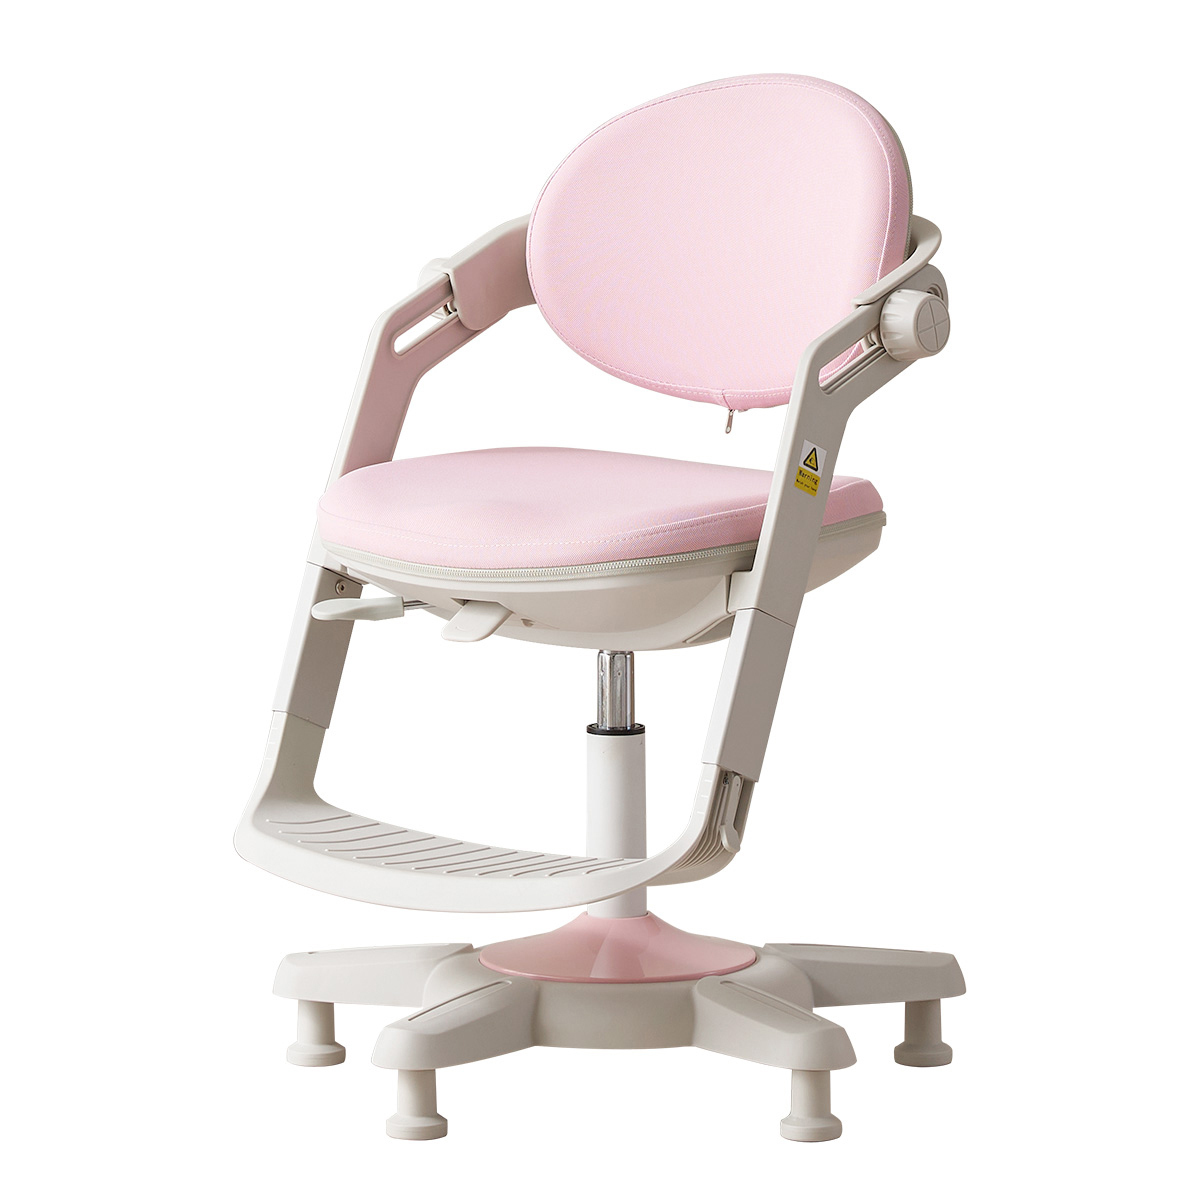 핀란디아 제니오 아동 높낮이 조절 의자 - 핑크